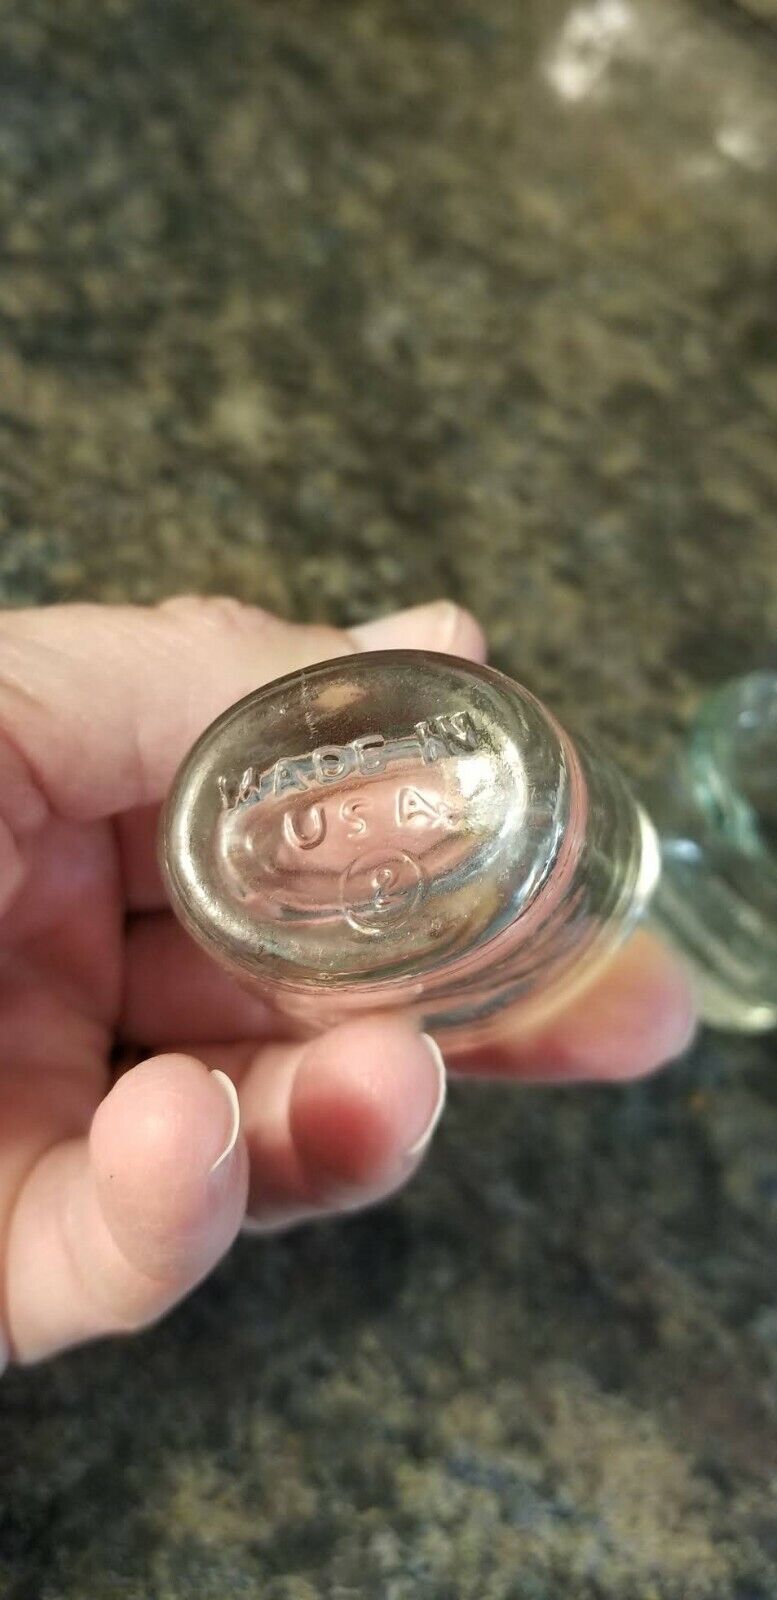 Lot of 2 Vintage Glass Eye Bath /  Eye Wash Made in USA (Lot 140) Без бренда - фотография #3